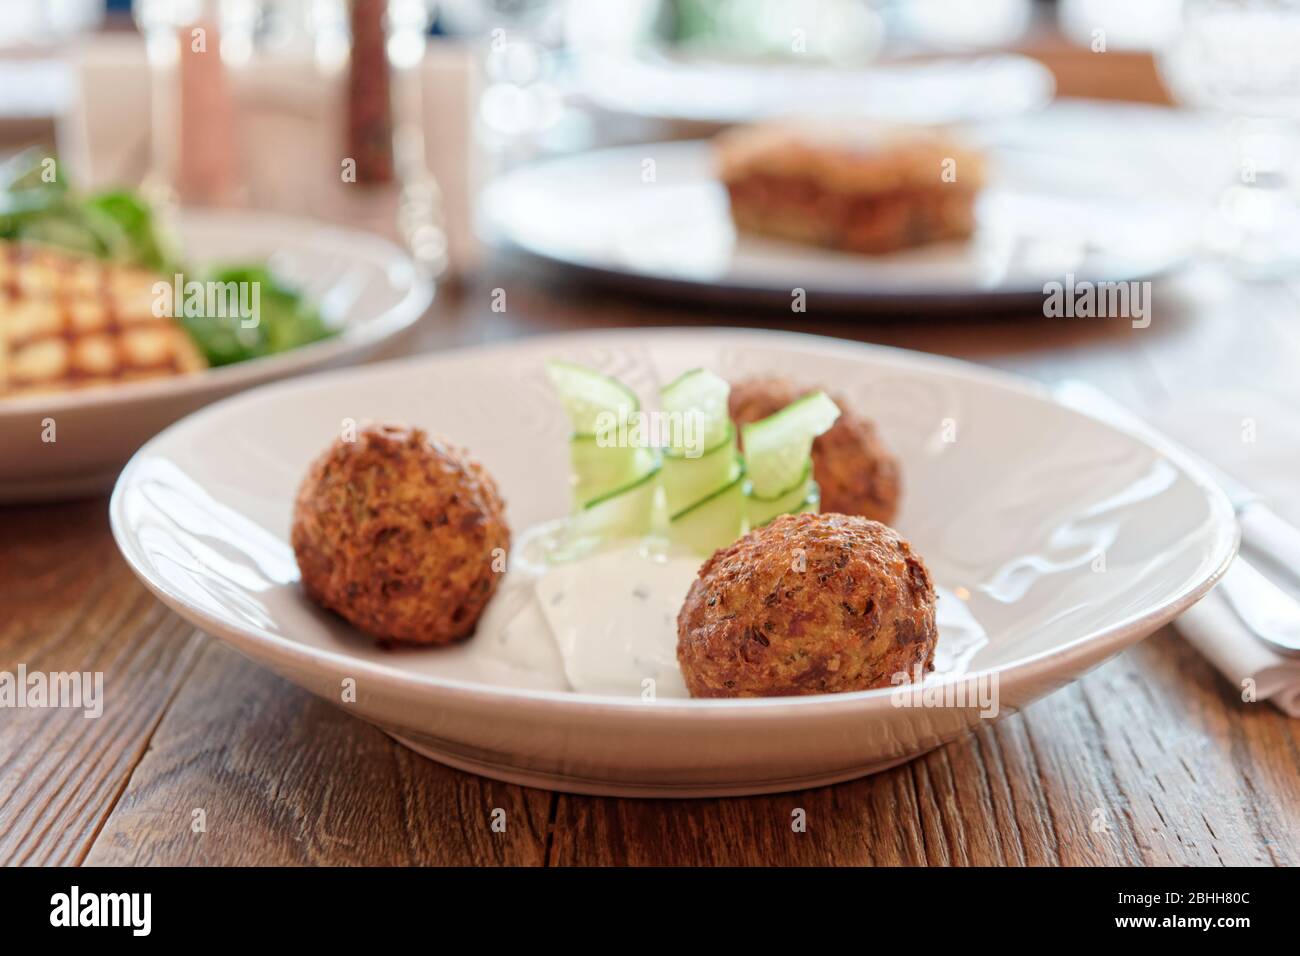 Courgettes courgettes et autres plats sur table de restaurant, cuisine grecque Banque D'Images